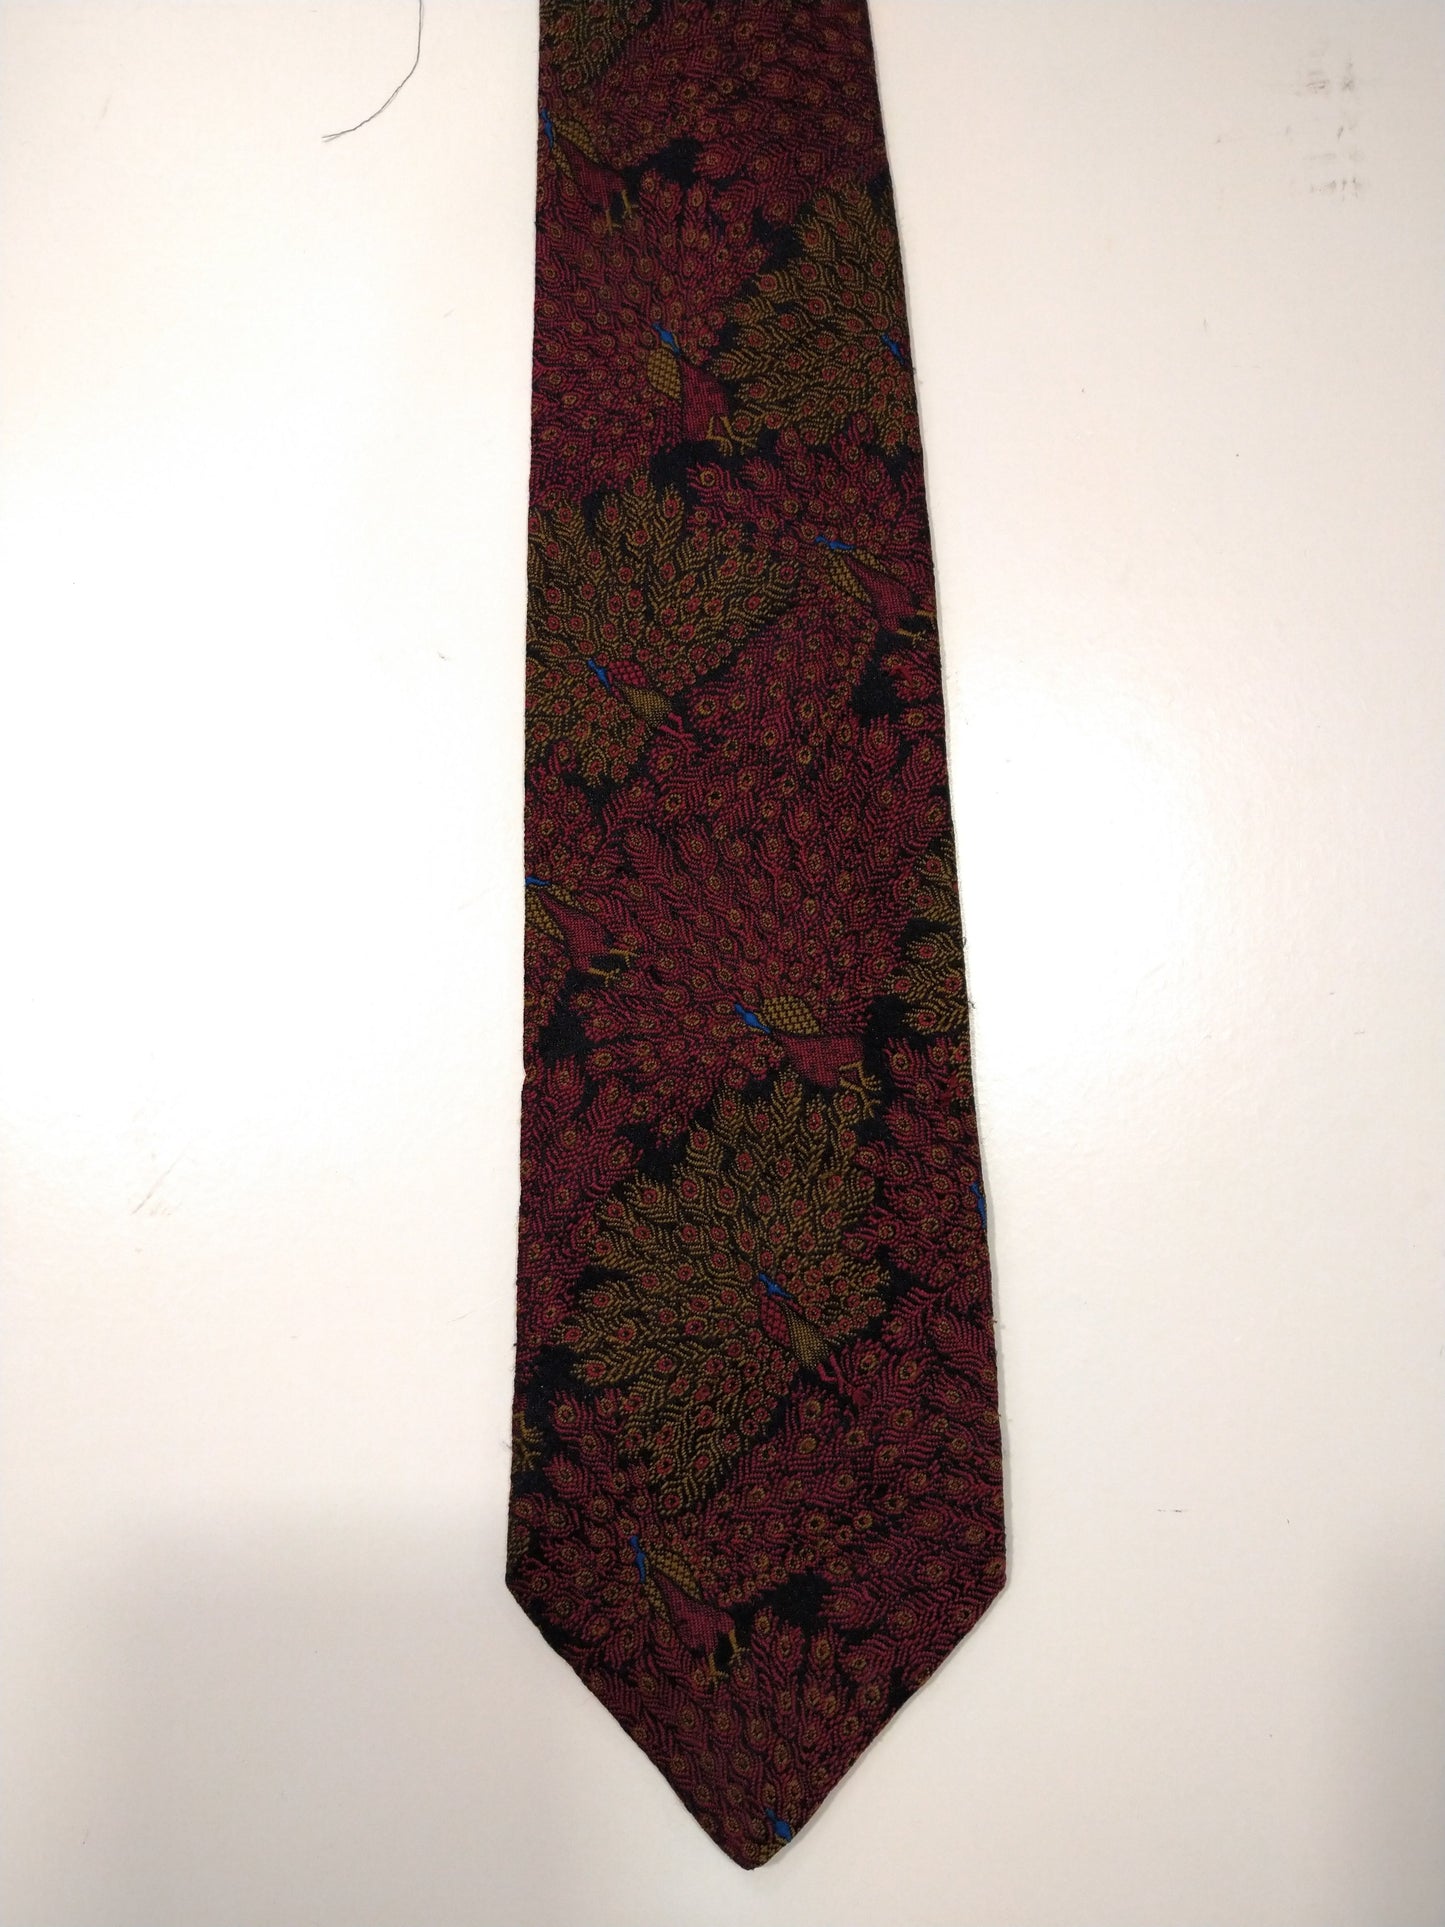 La corbata vintage de Eliseo. Motivo amarillo rojo.